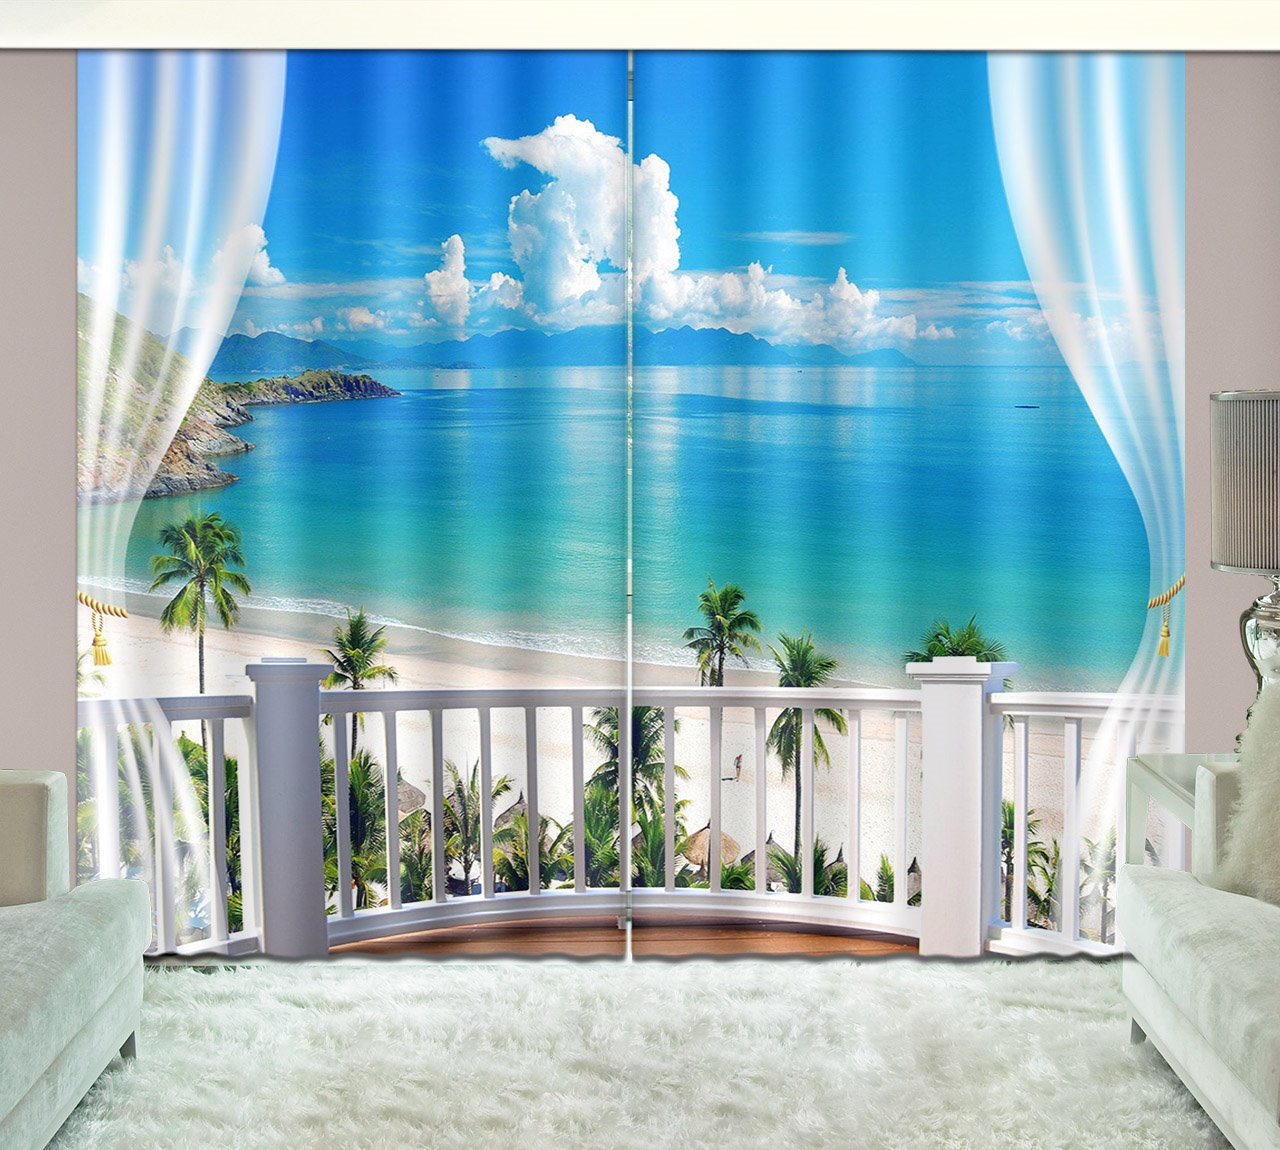 Cortina de sala de estar personalizada con paisaje de cocoteros y nubes blancas impresas en 3D